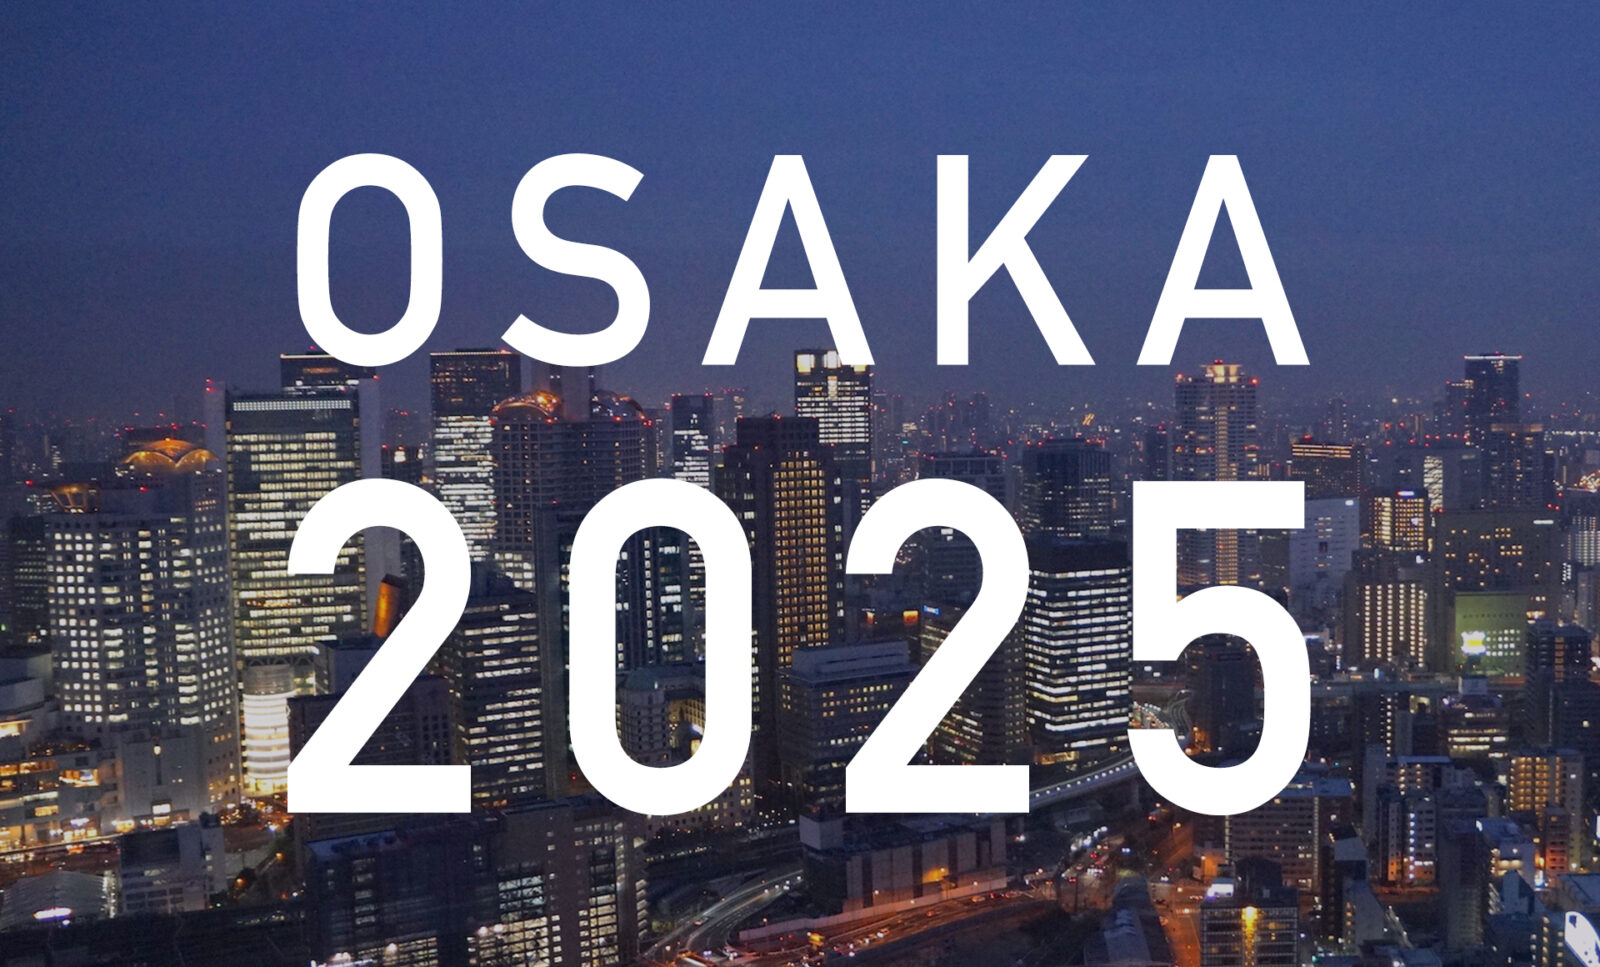 大阪万博までに完成予定の再開発計画まとめ。2025年までに続々竣工予定。のサムネイル画像